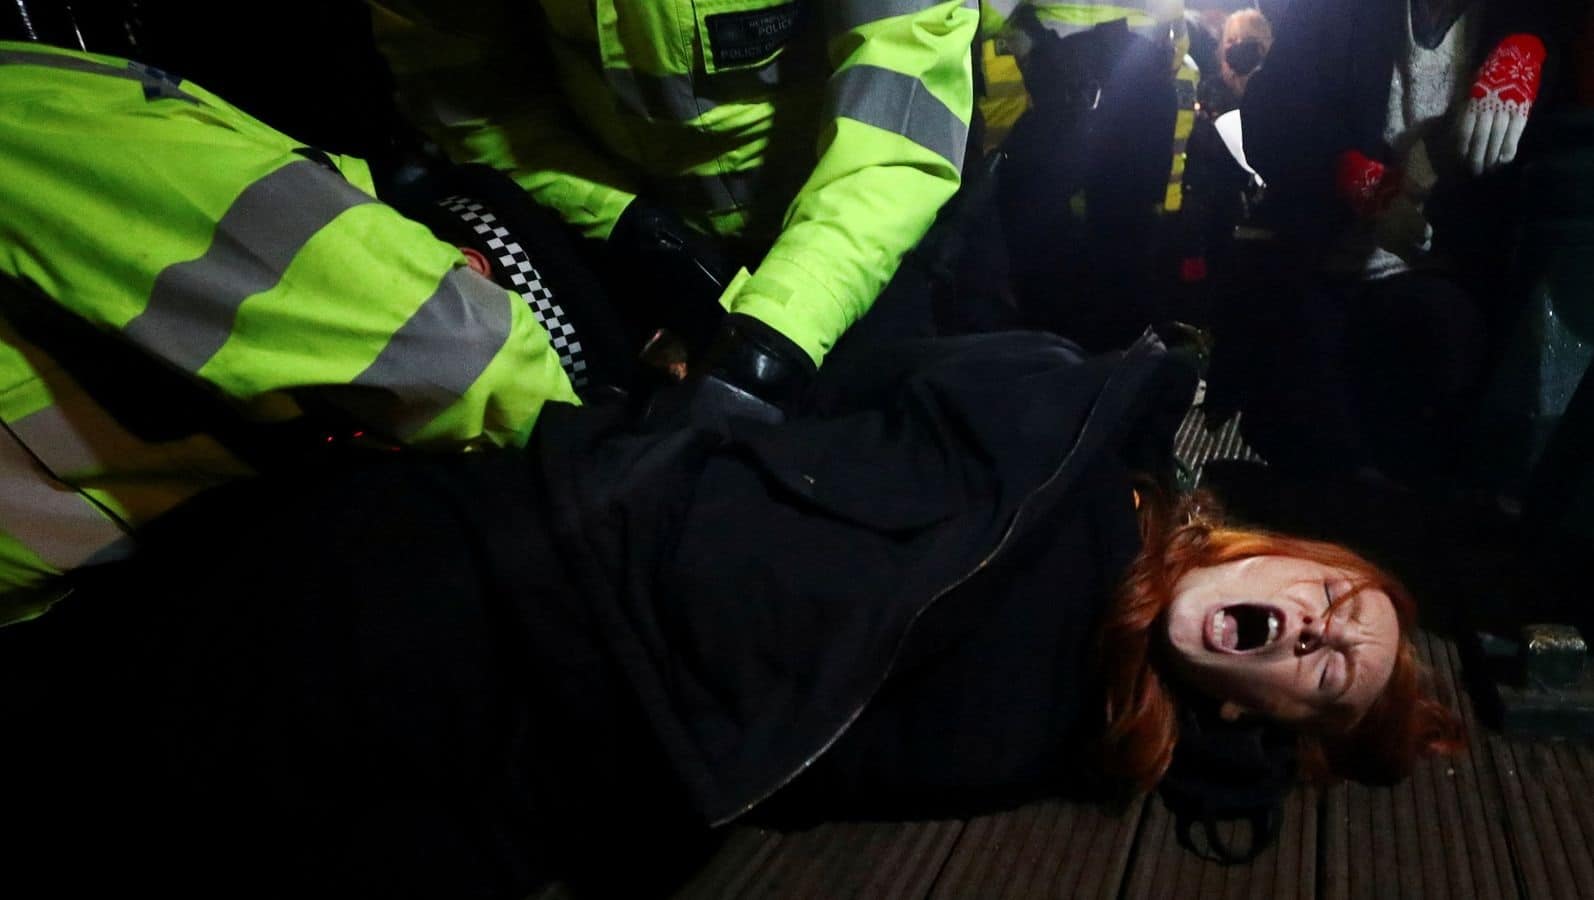 الشرطة تعتقل امرأة في الوقفة الاحتجاجية تكريماً لسارة إيفيرارد وتهددها بالعصا